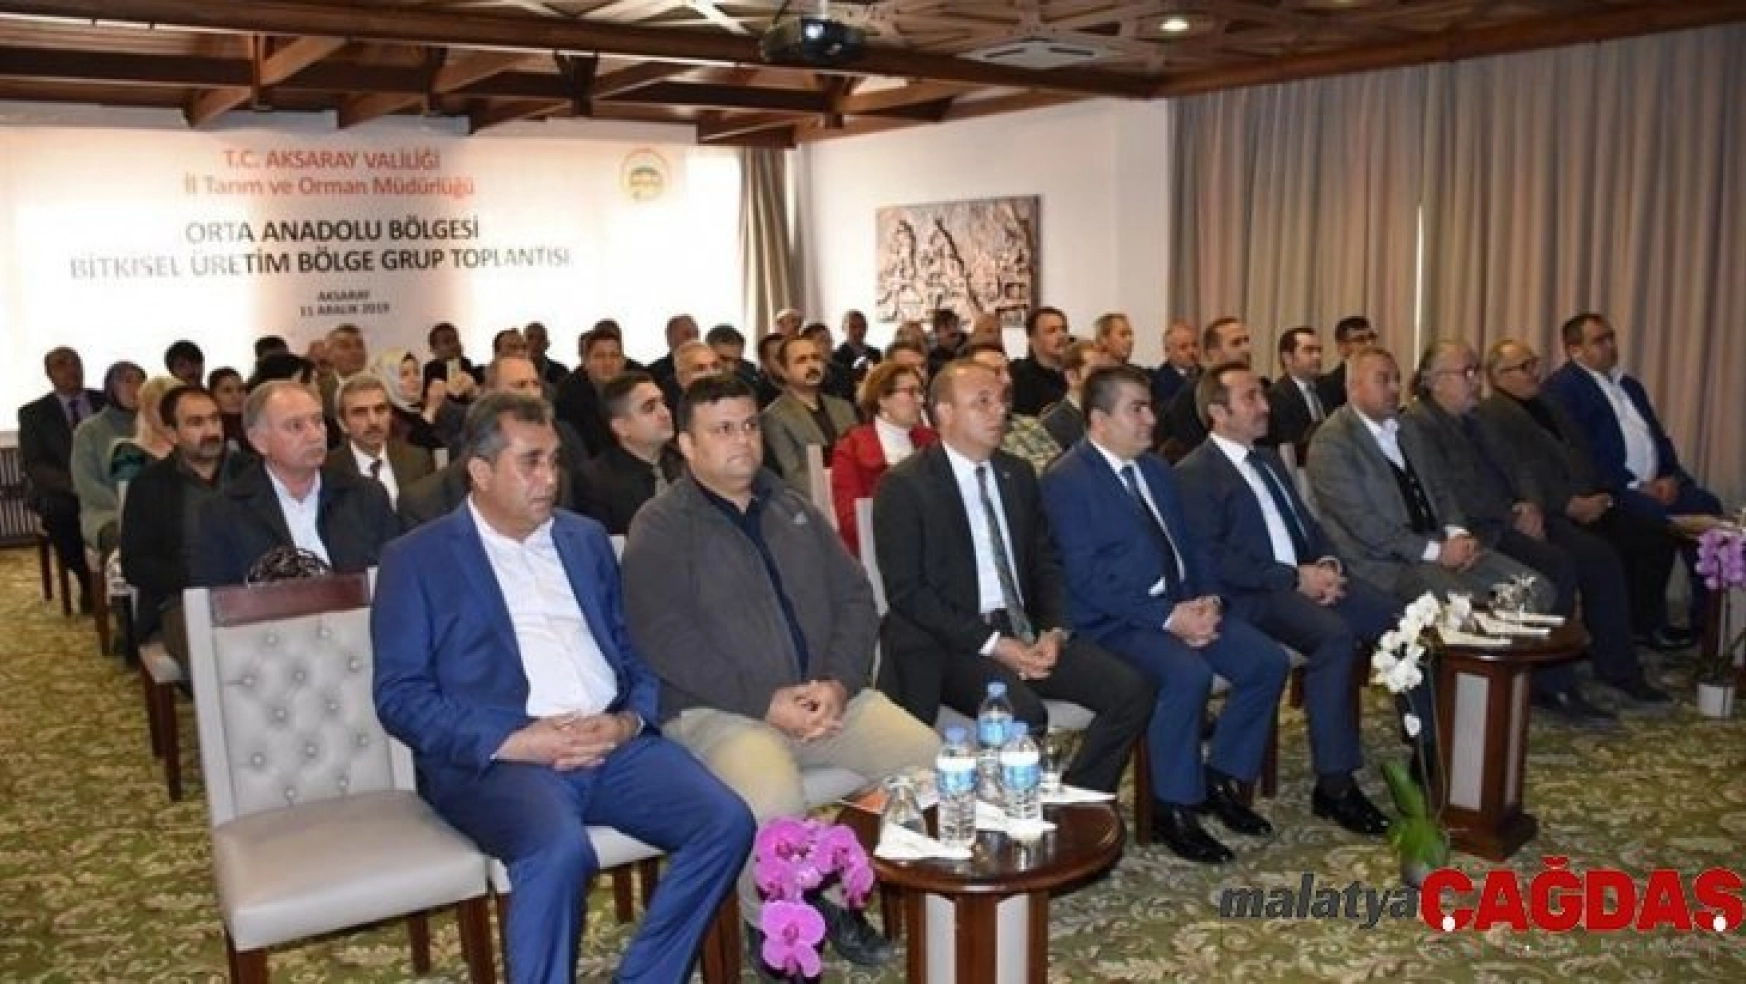 Orta Anadolu Bölgesi Bitkisel Üretim Grup toplantısı Aksaray'da yapıldı